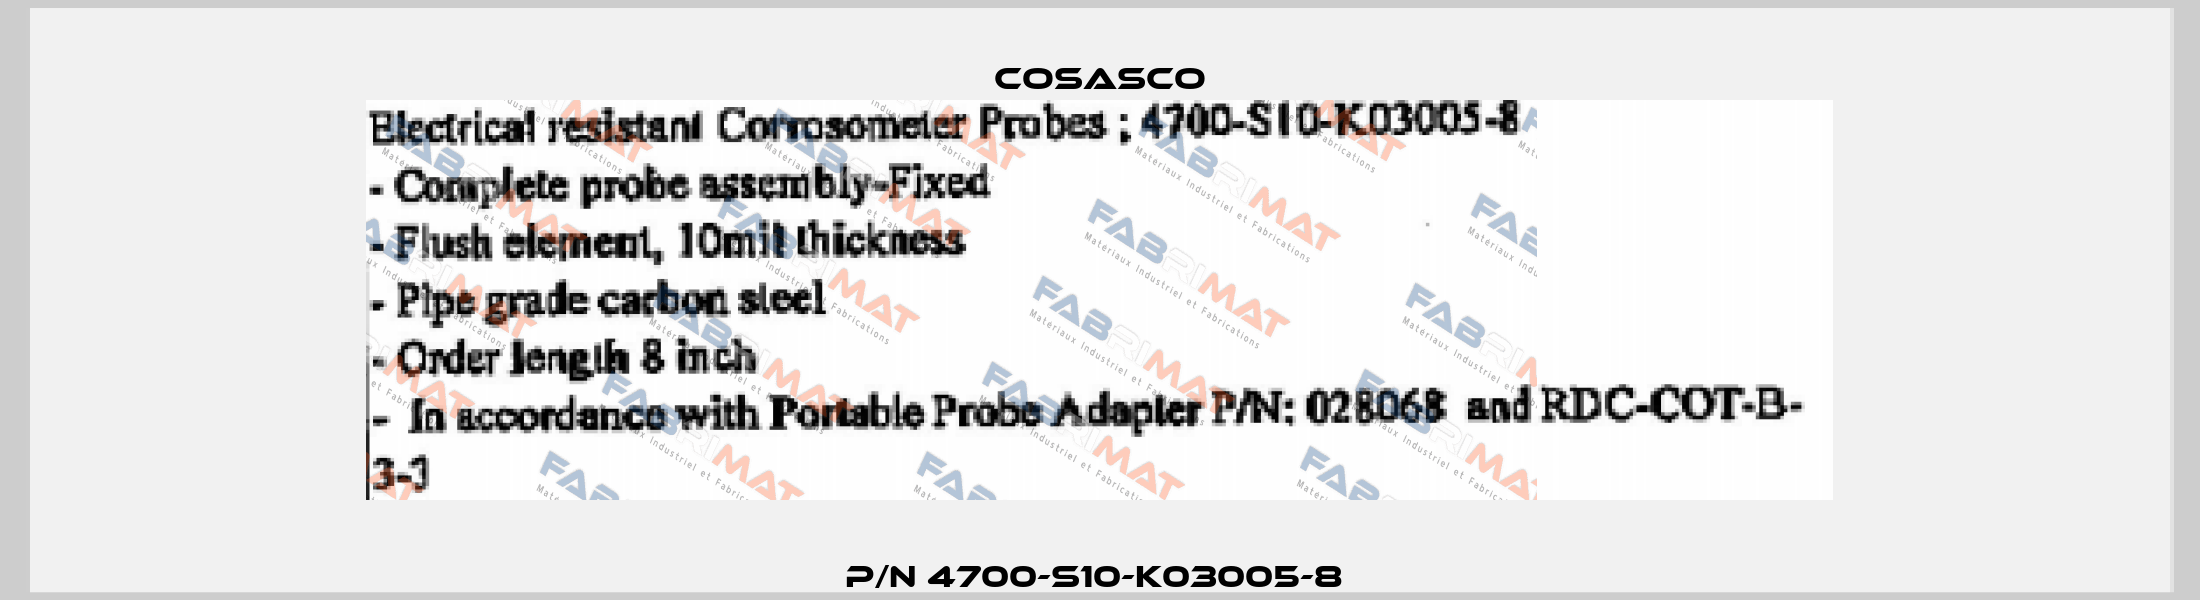 P/N 4700-S10-K03005-8  Cosasco